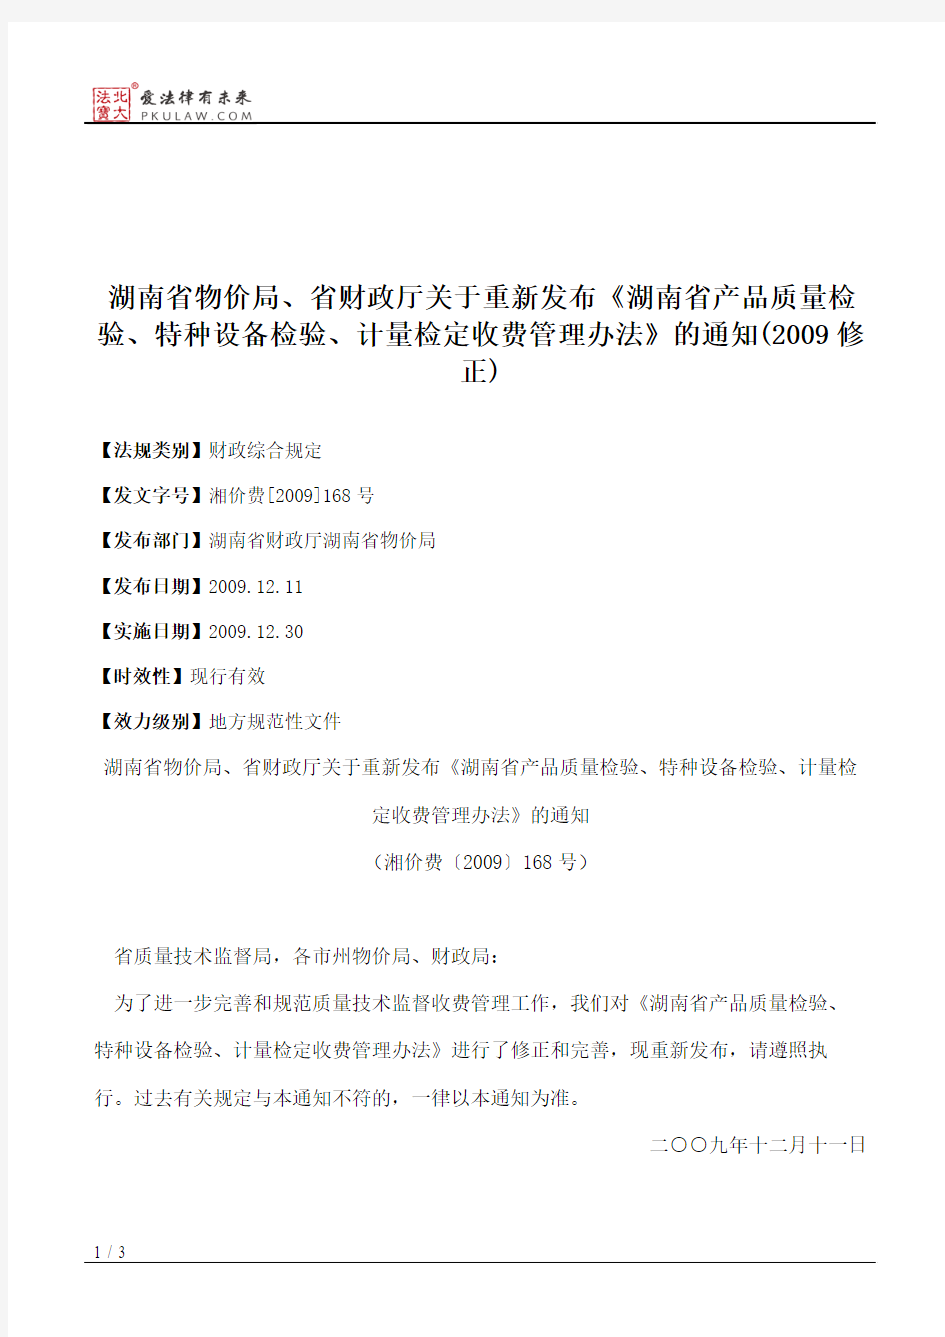 湖南省物价局、省财政厅关于重新发布《湖南省产品质量检验、特种